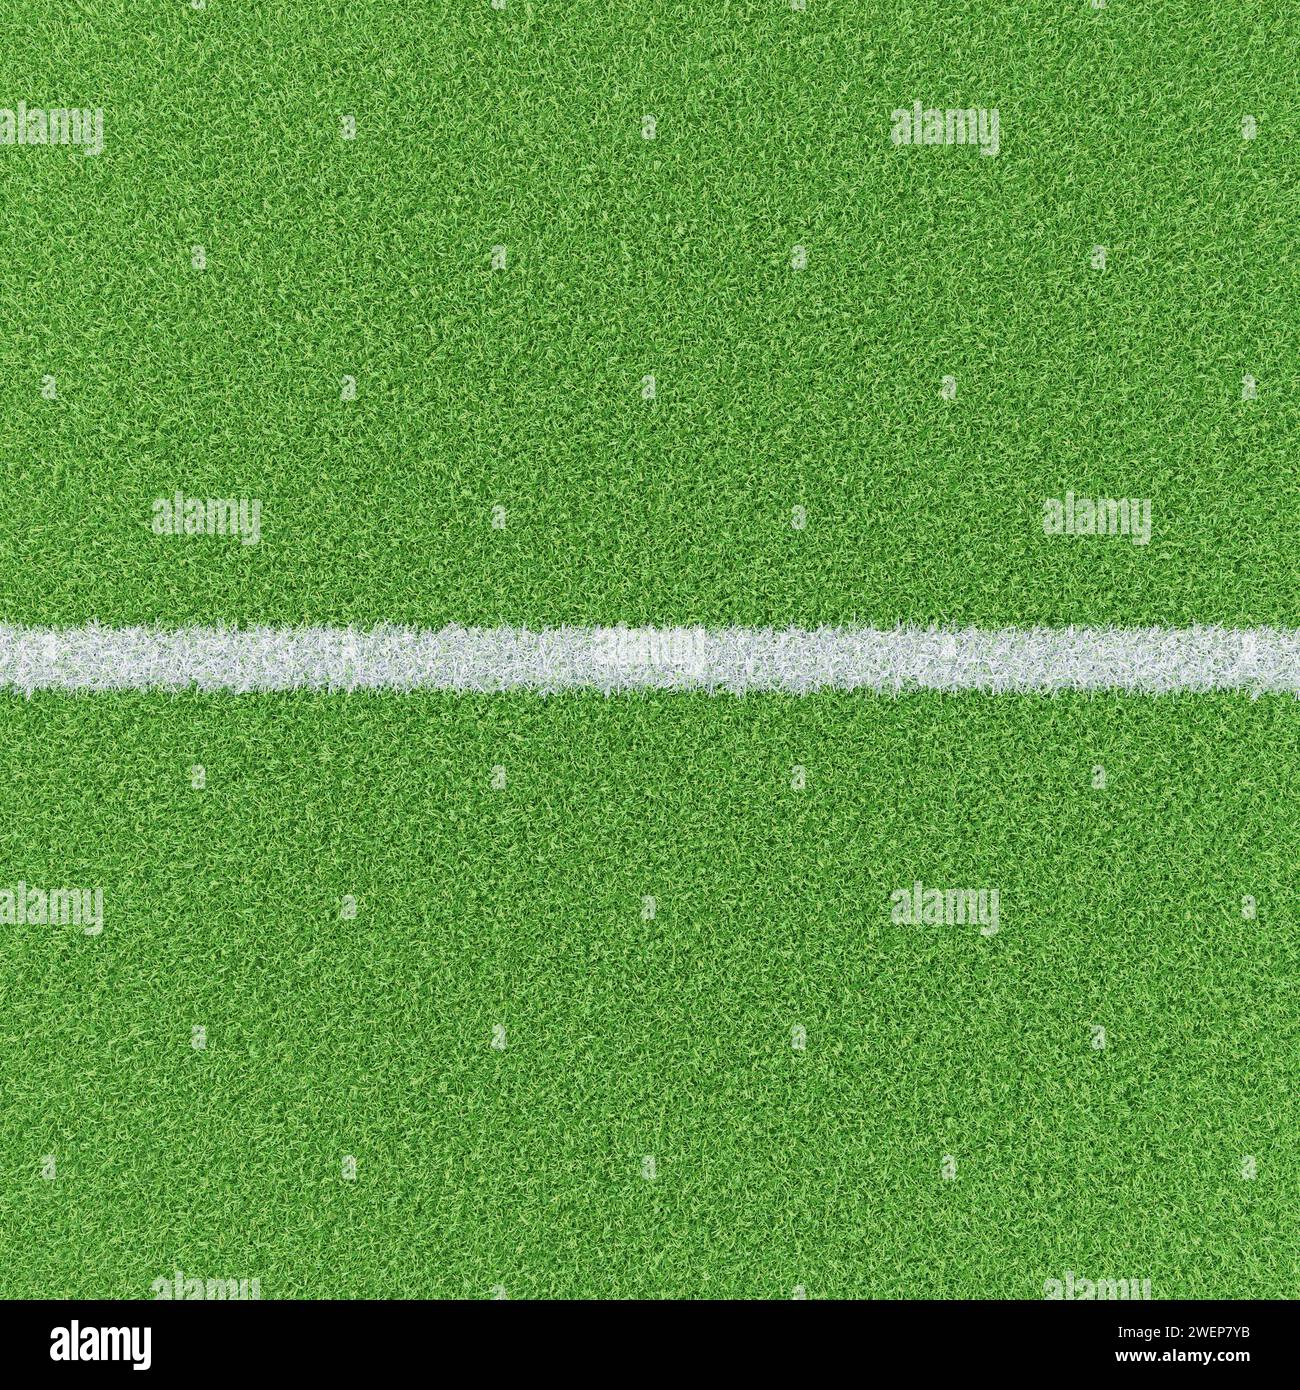 Kreidelinie auf einem gepflegten Grasfeld. Basisbild für Composites für Fußball- oder Fußballsportbilder. Hochwinkelansicht. Stockfoto